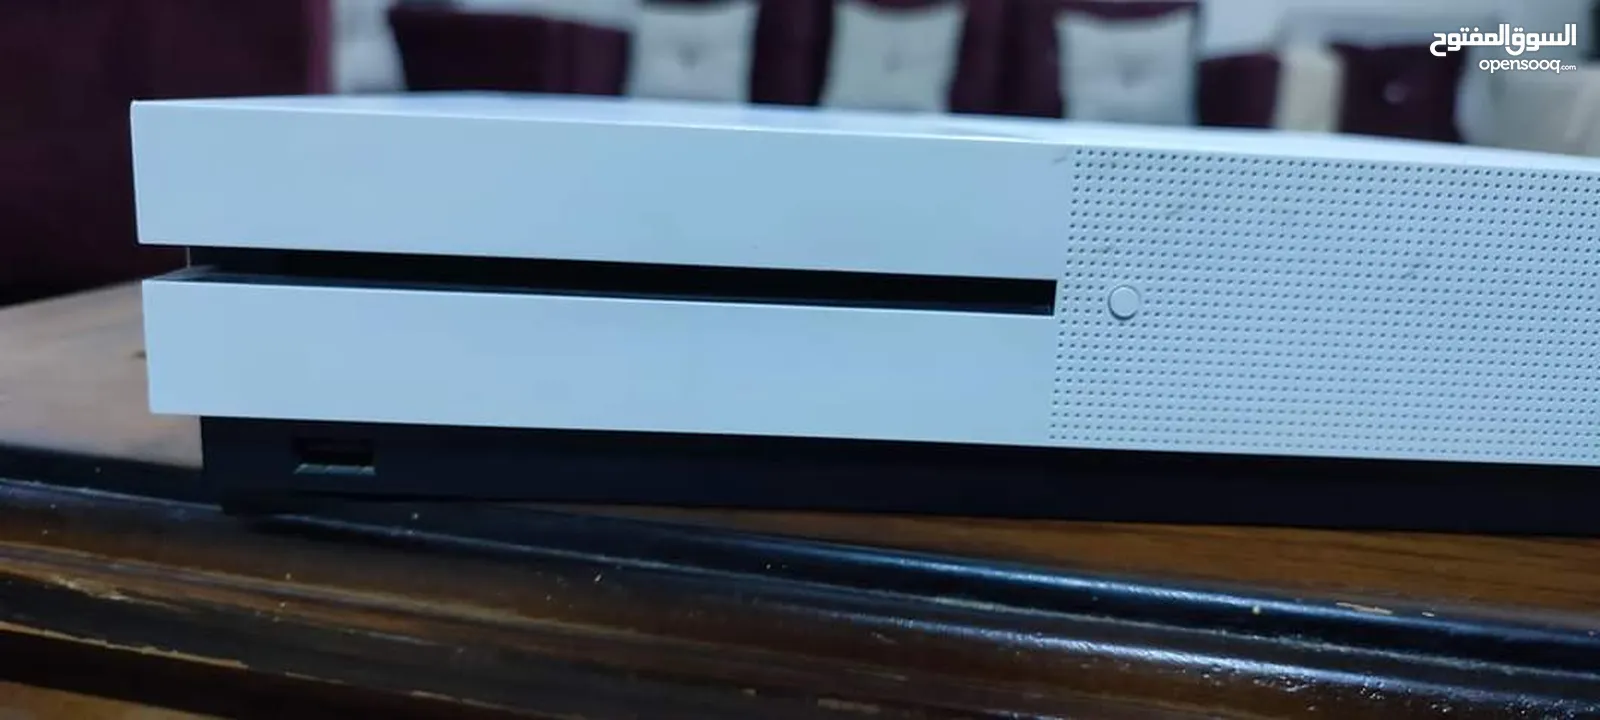 جهاز Xbox one s 500+حساب xbox +الايد الاصليه +ايد احترافيه